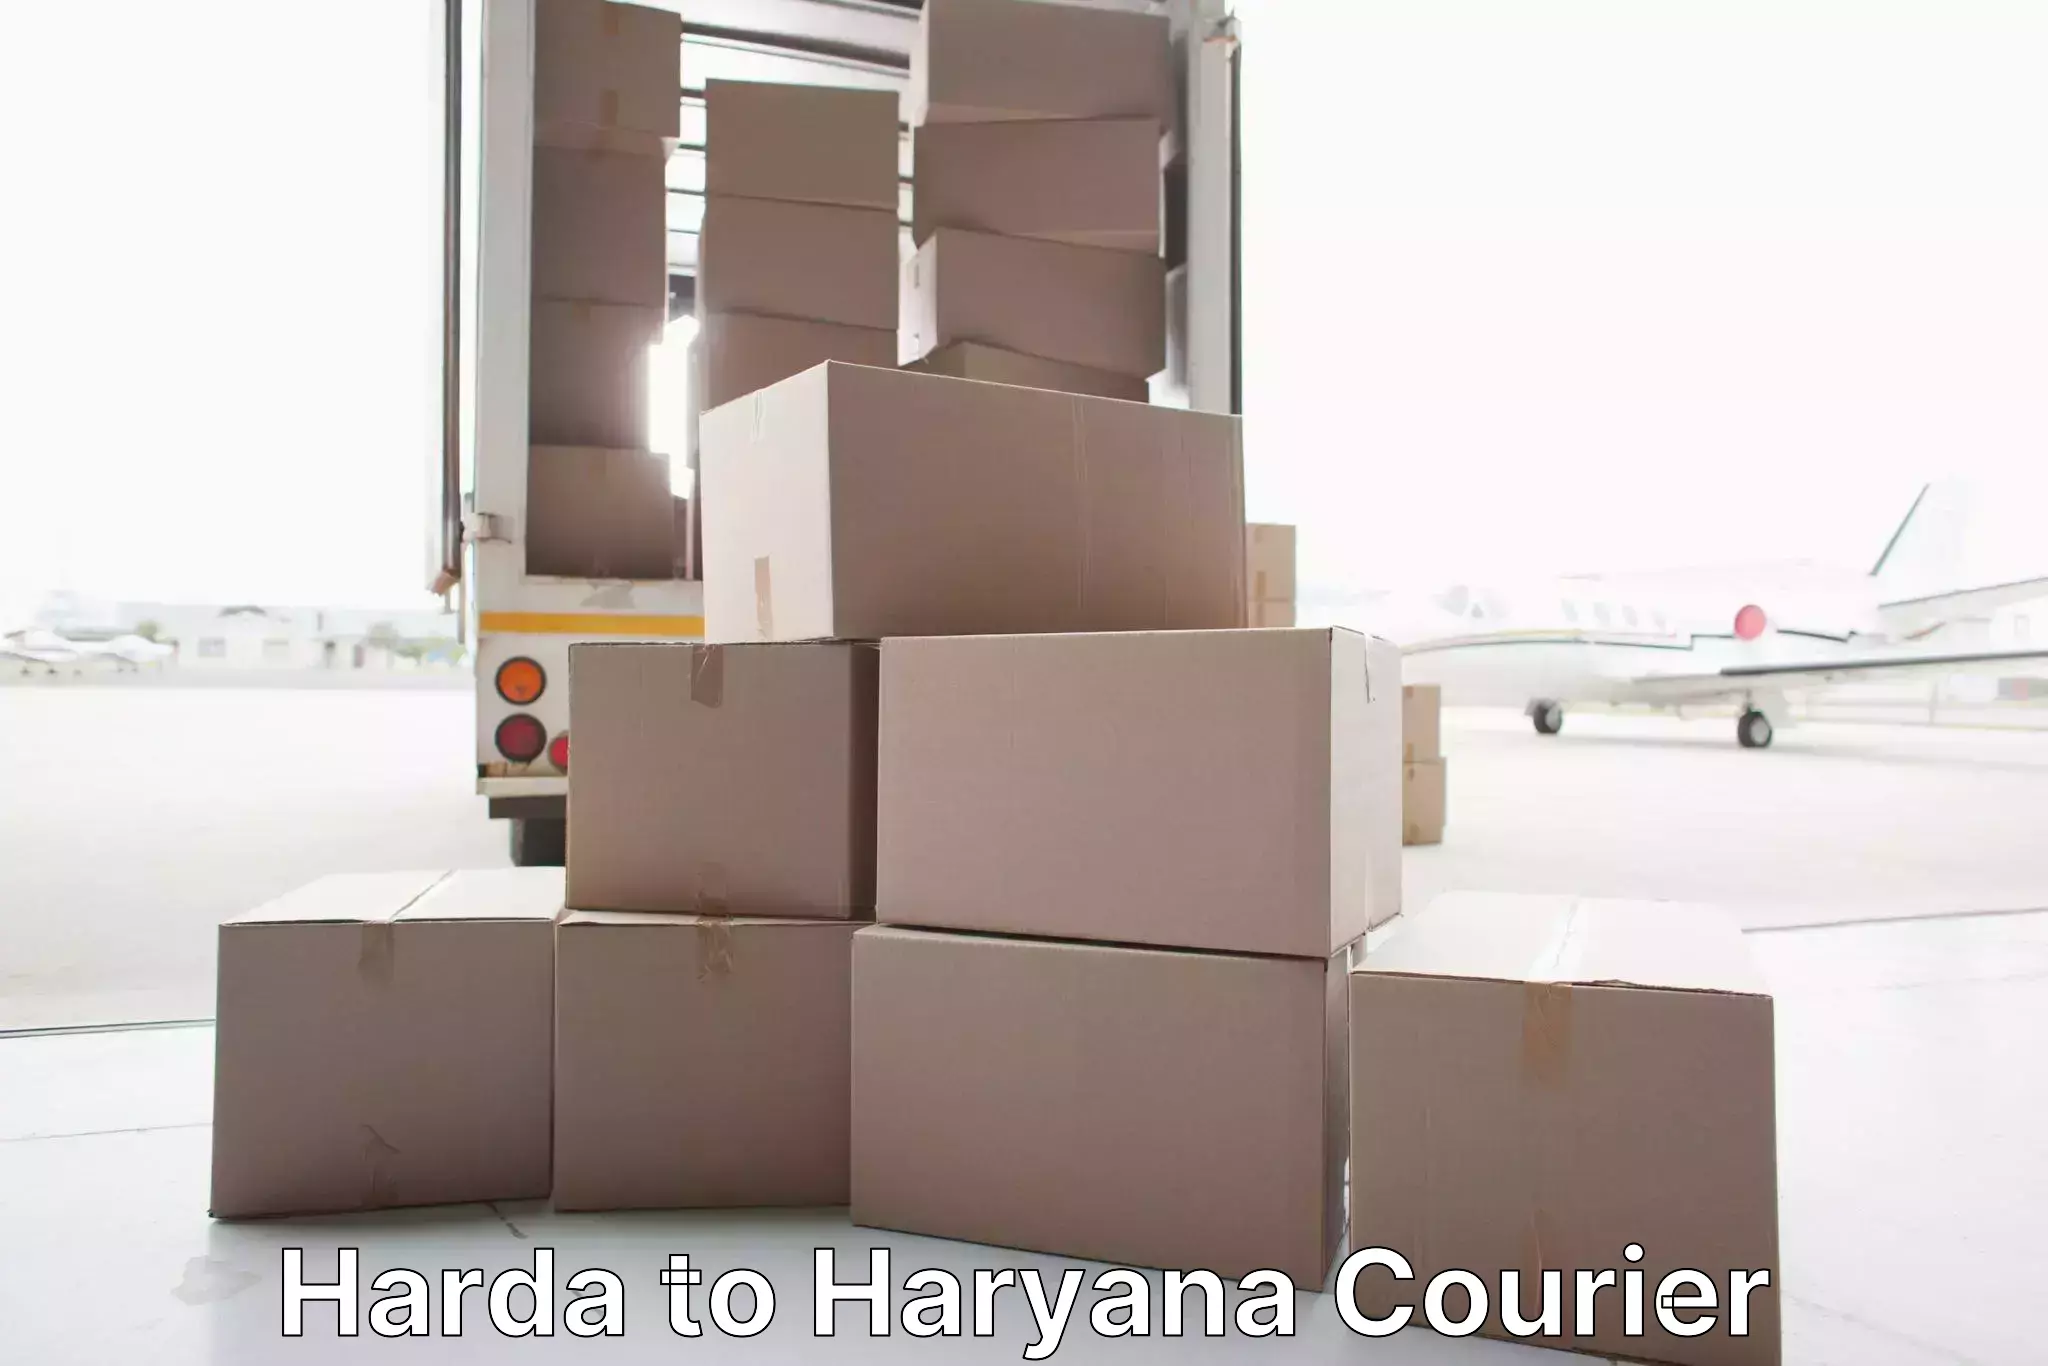 Furniture handling services Harda to Ellenabad